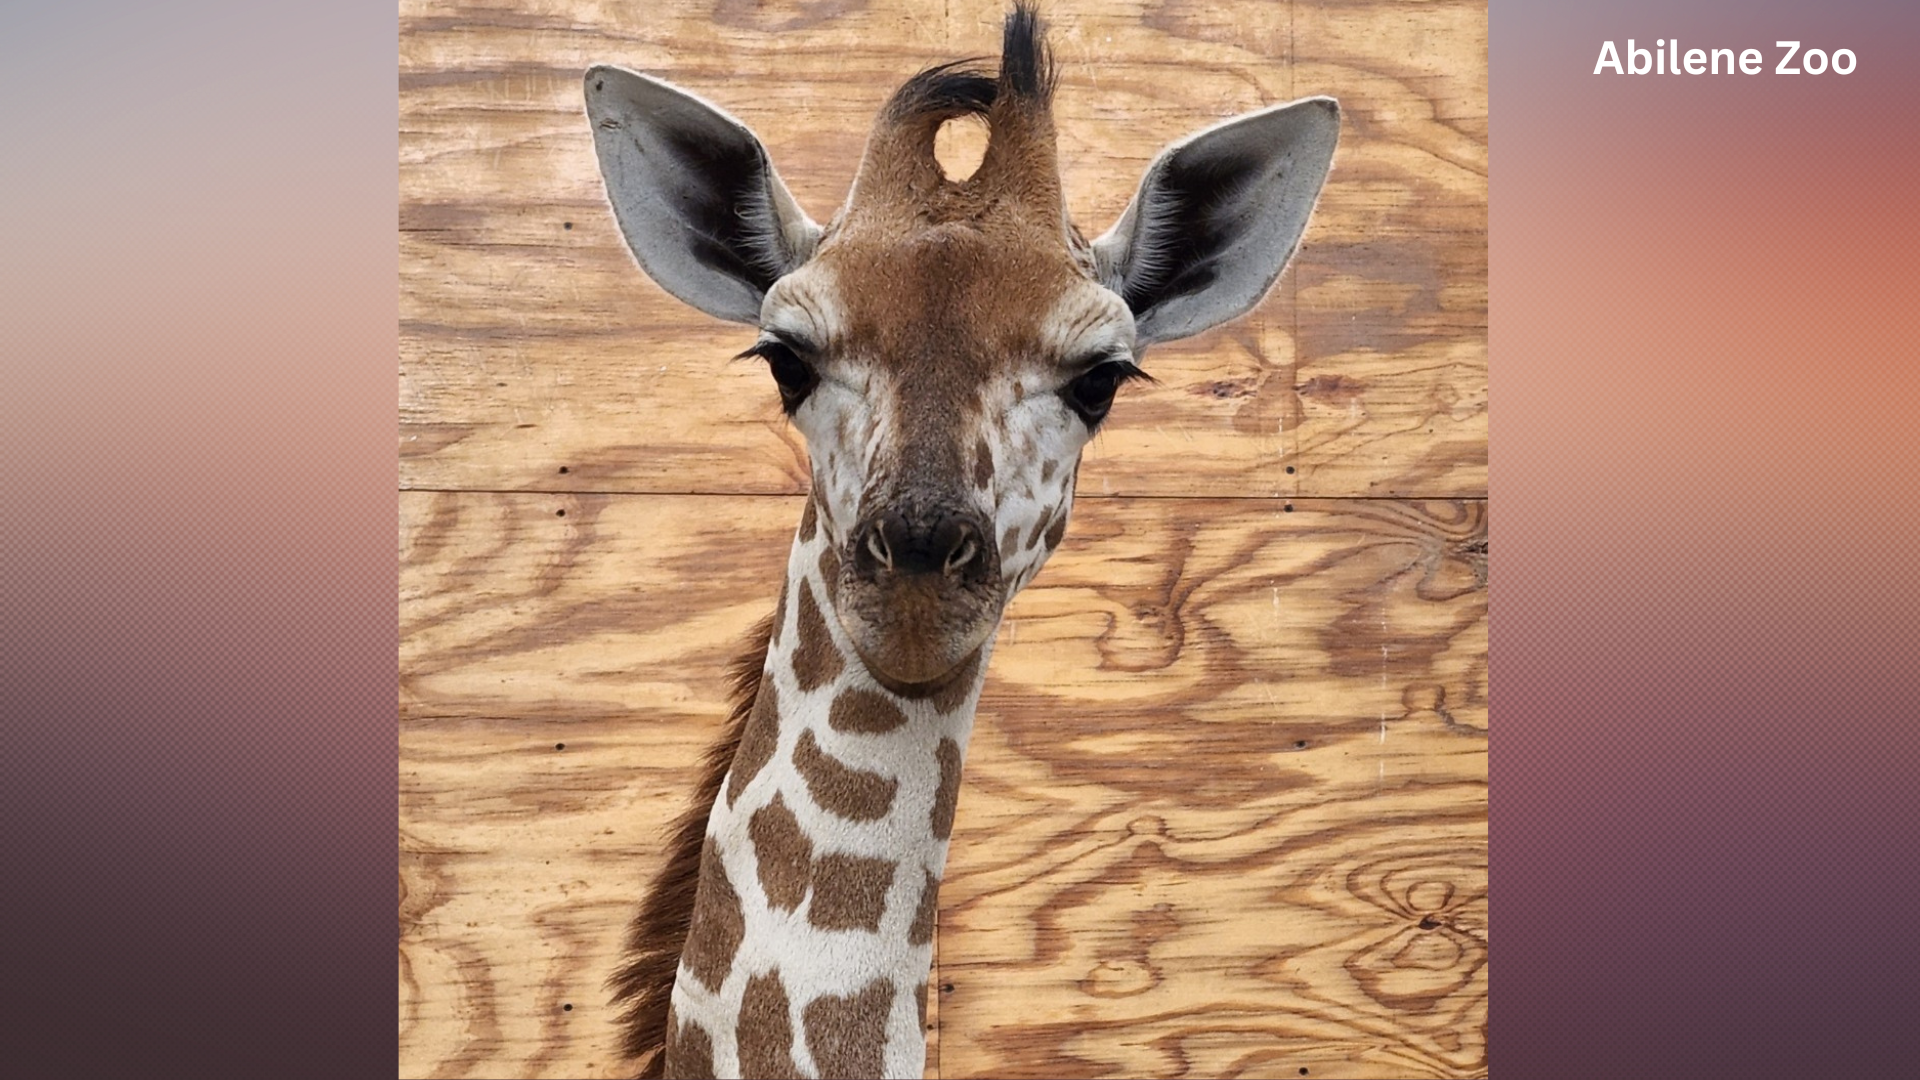 Giraffe passes away at Abilene Zoo